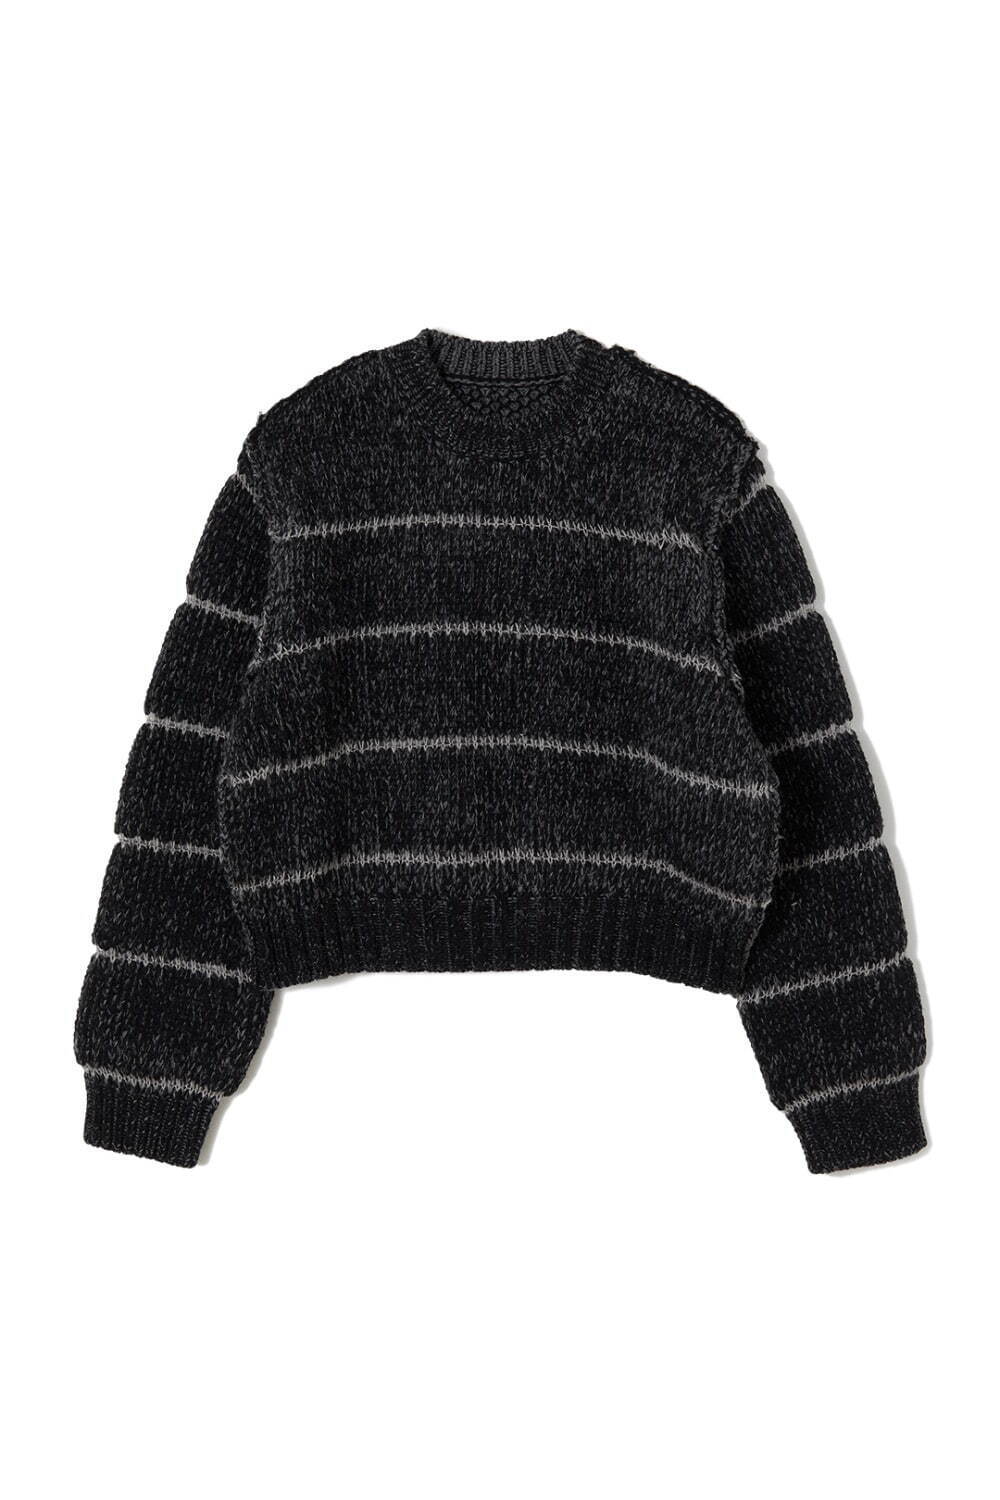 Wool Rib Knit Top 35,200円